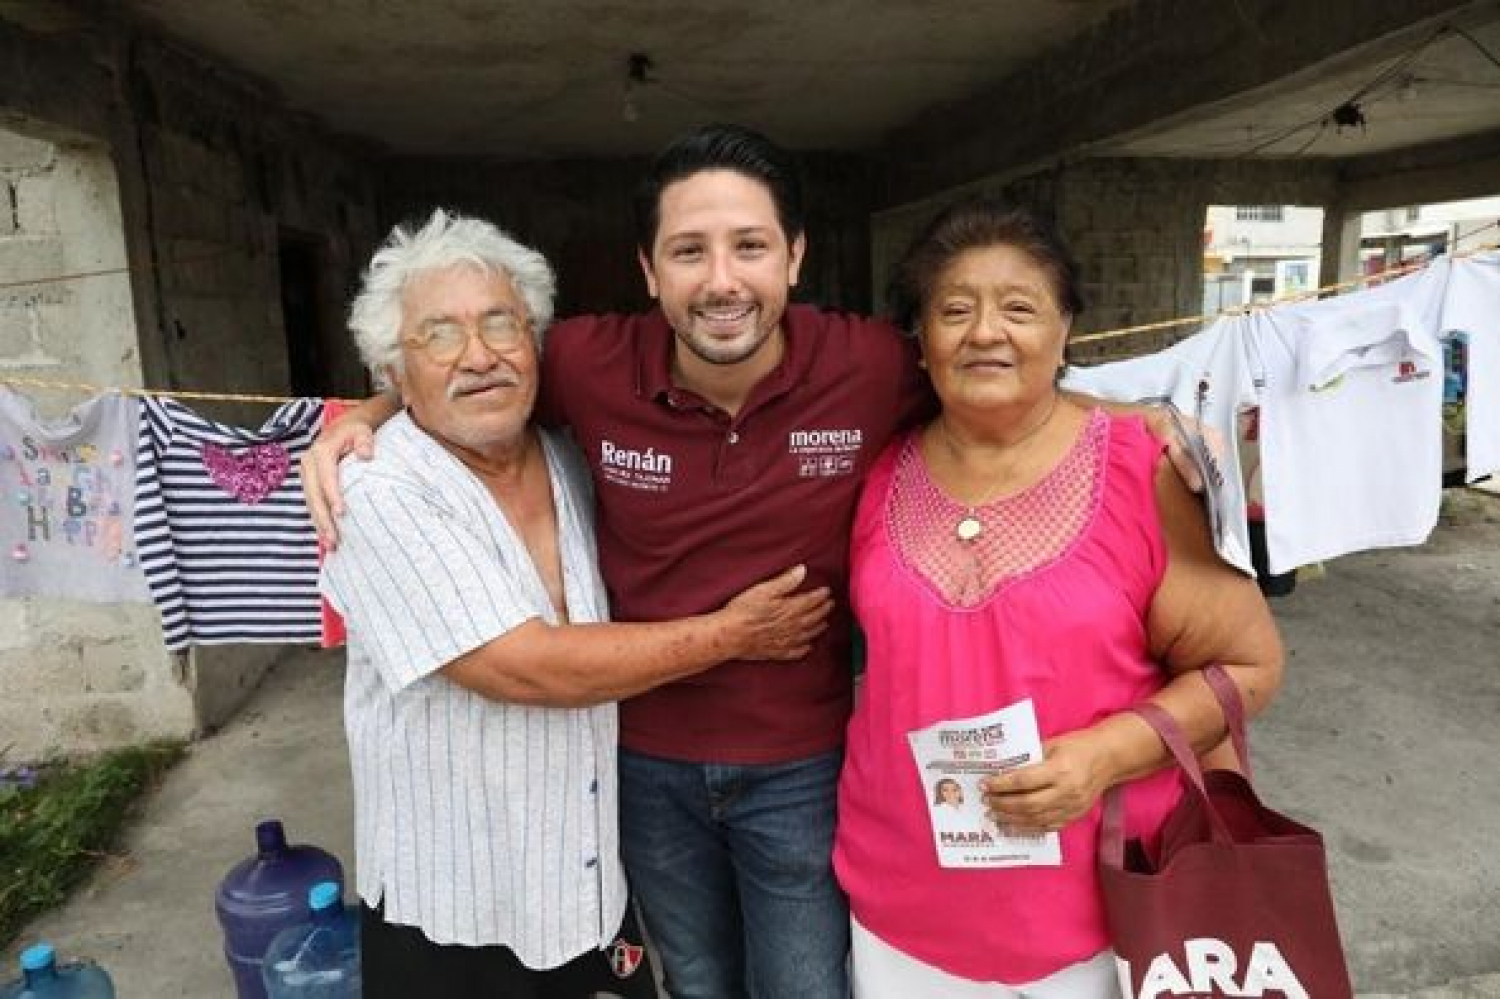 Con el voto de la gente, Morena ganará en Cozumel